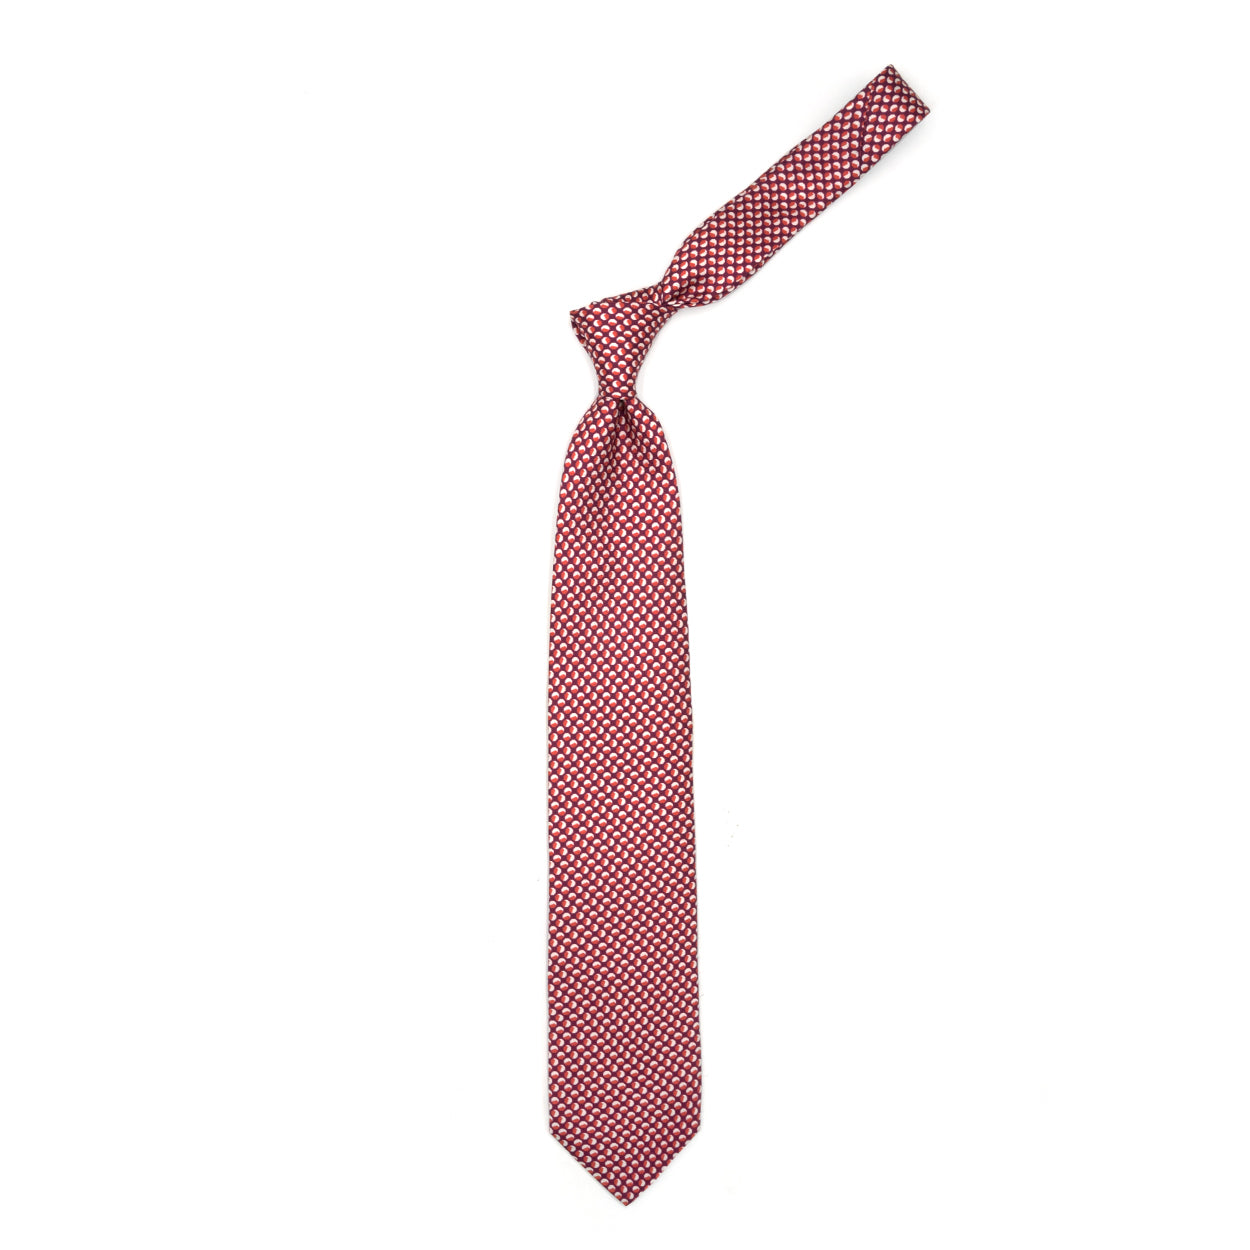 Cravatta magenta con pattern geometrico bianco e rosso